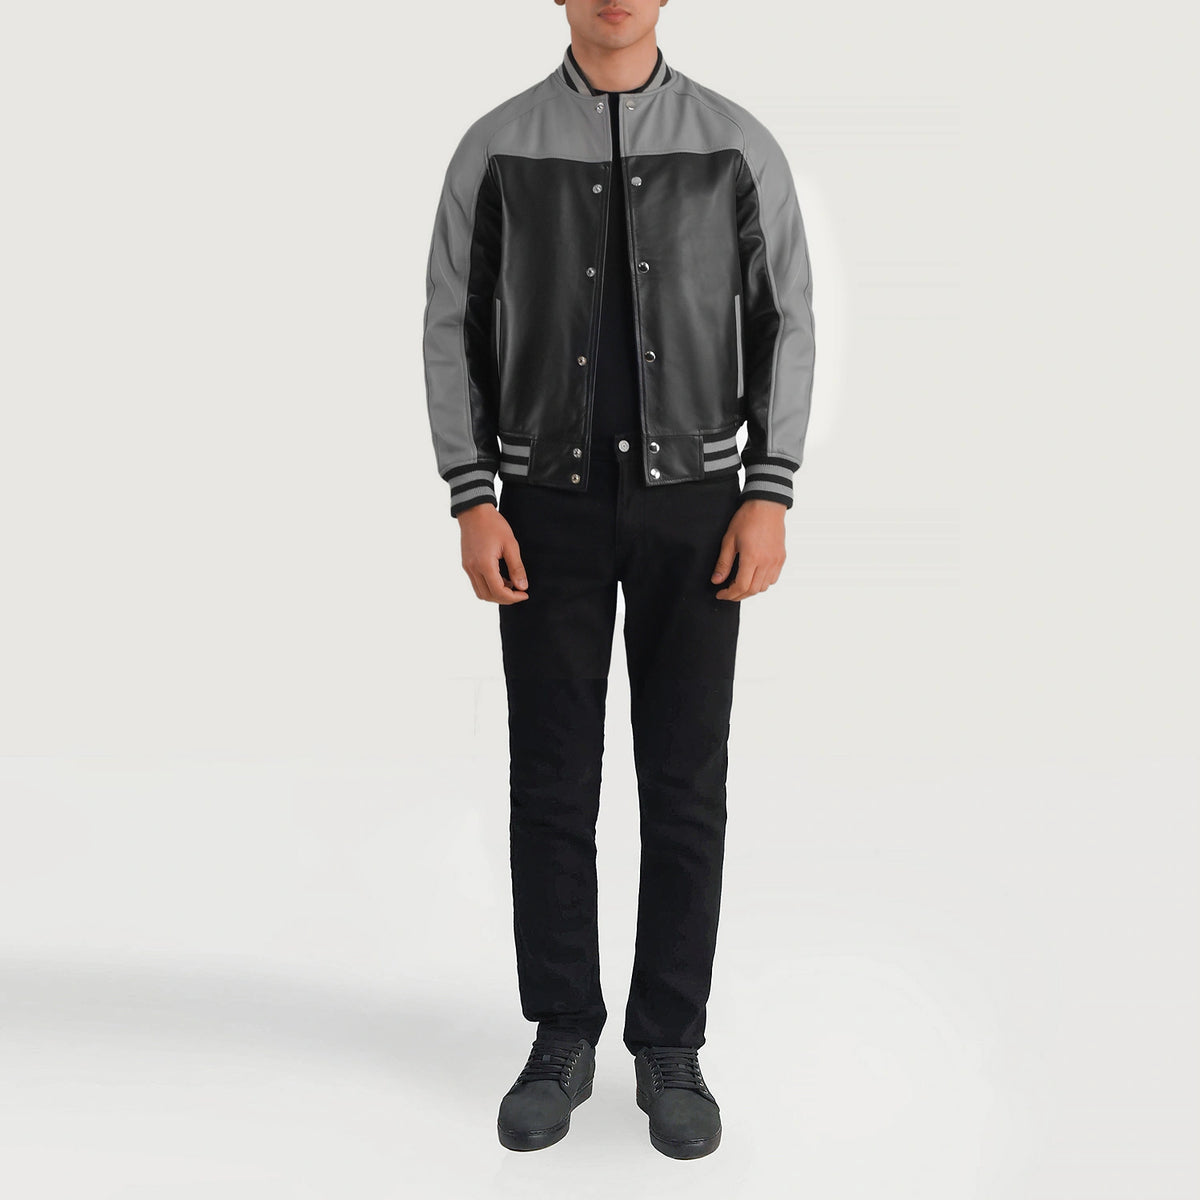 Terrance Black & Grey Leather Varsity Jacket